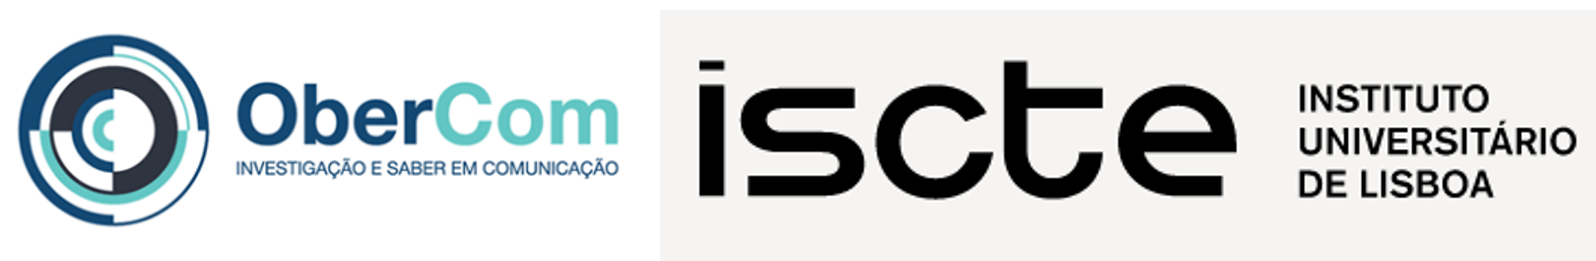 Logotipo Obercom ISCTE